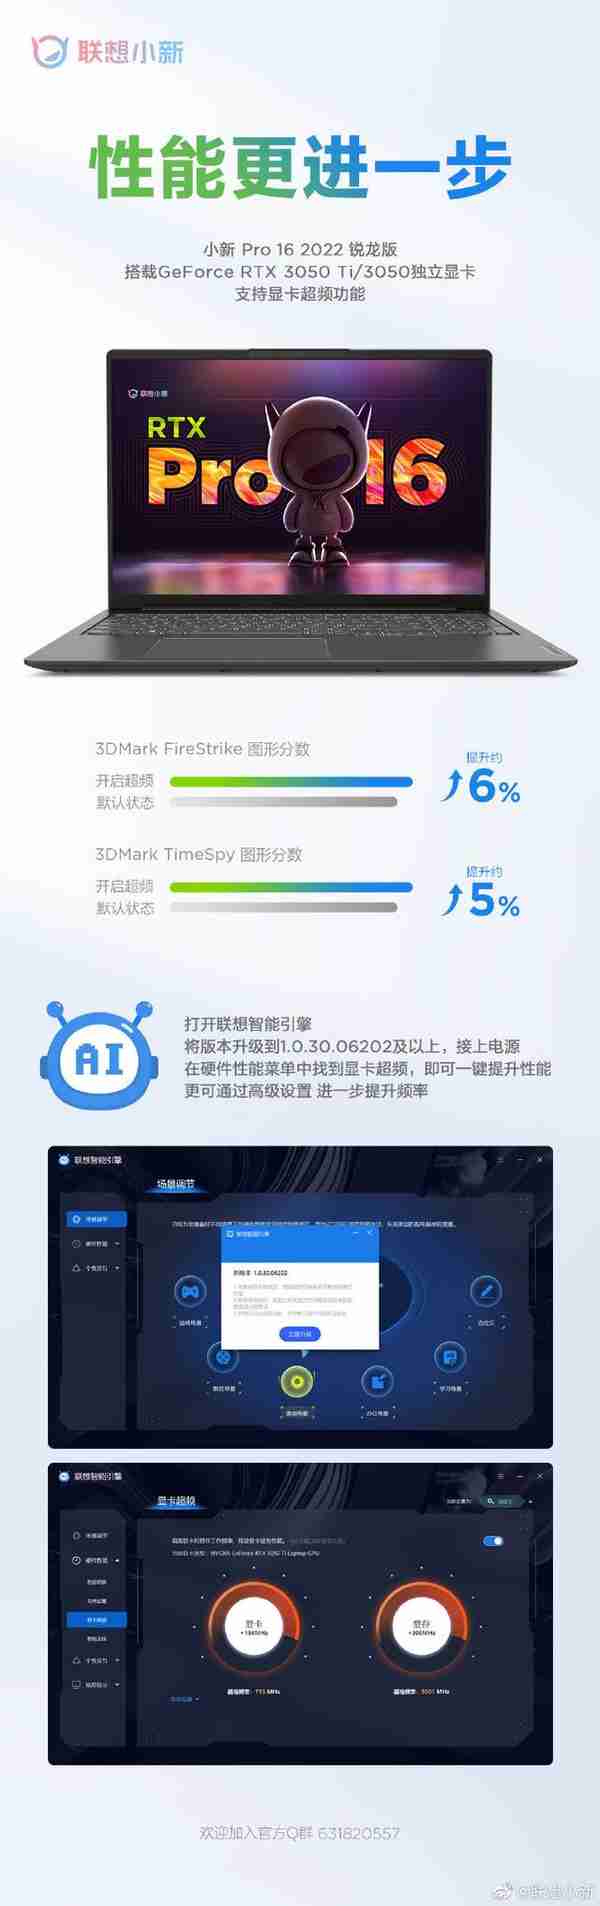 联想小新 Pro16 2022 锐龙 RTX 版支持显卡超频，性能提升 6%